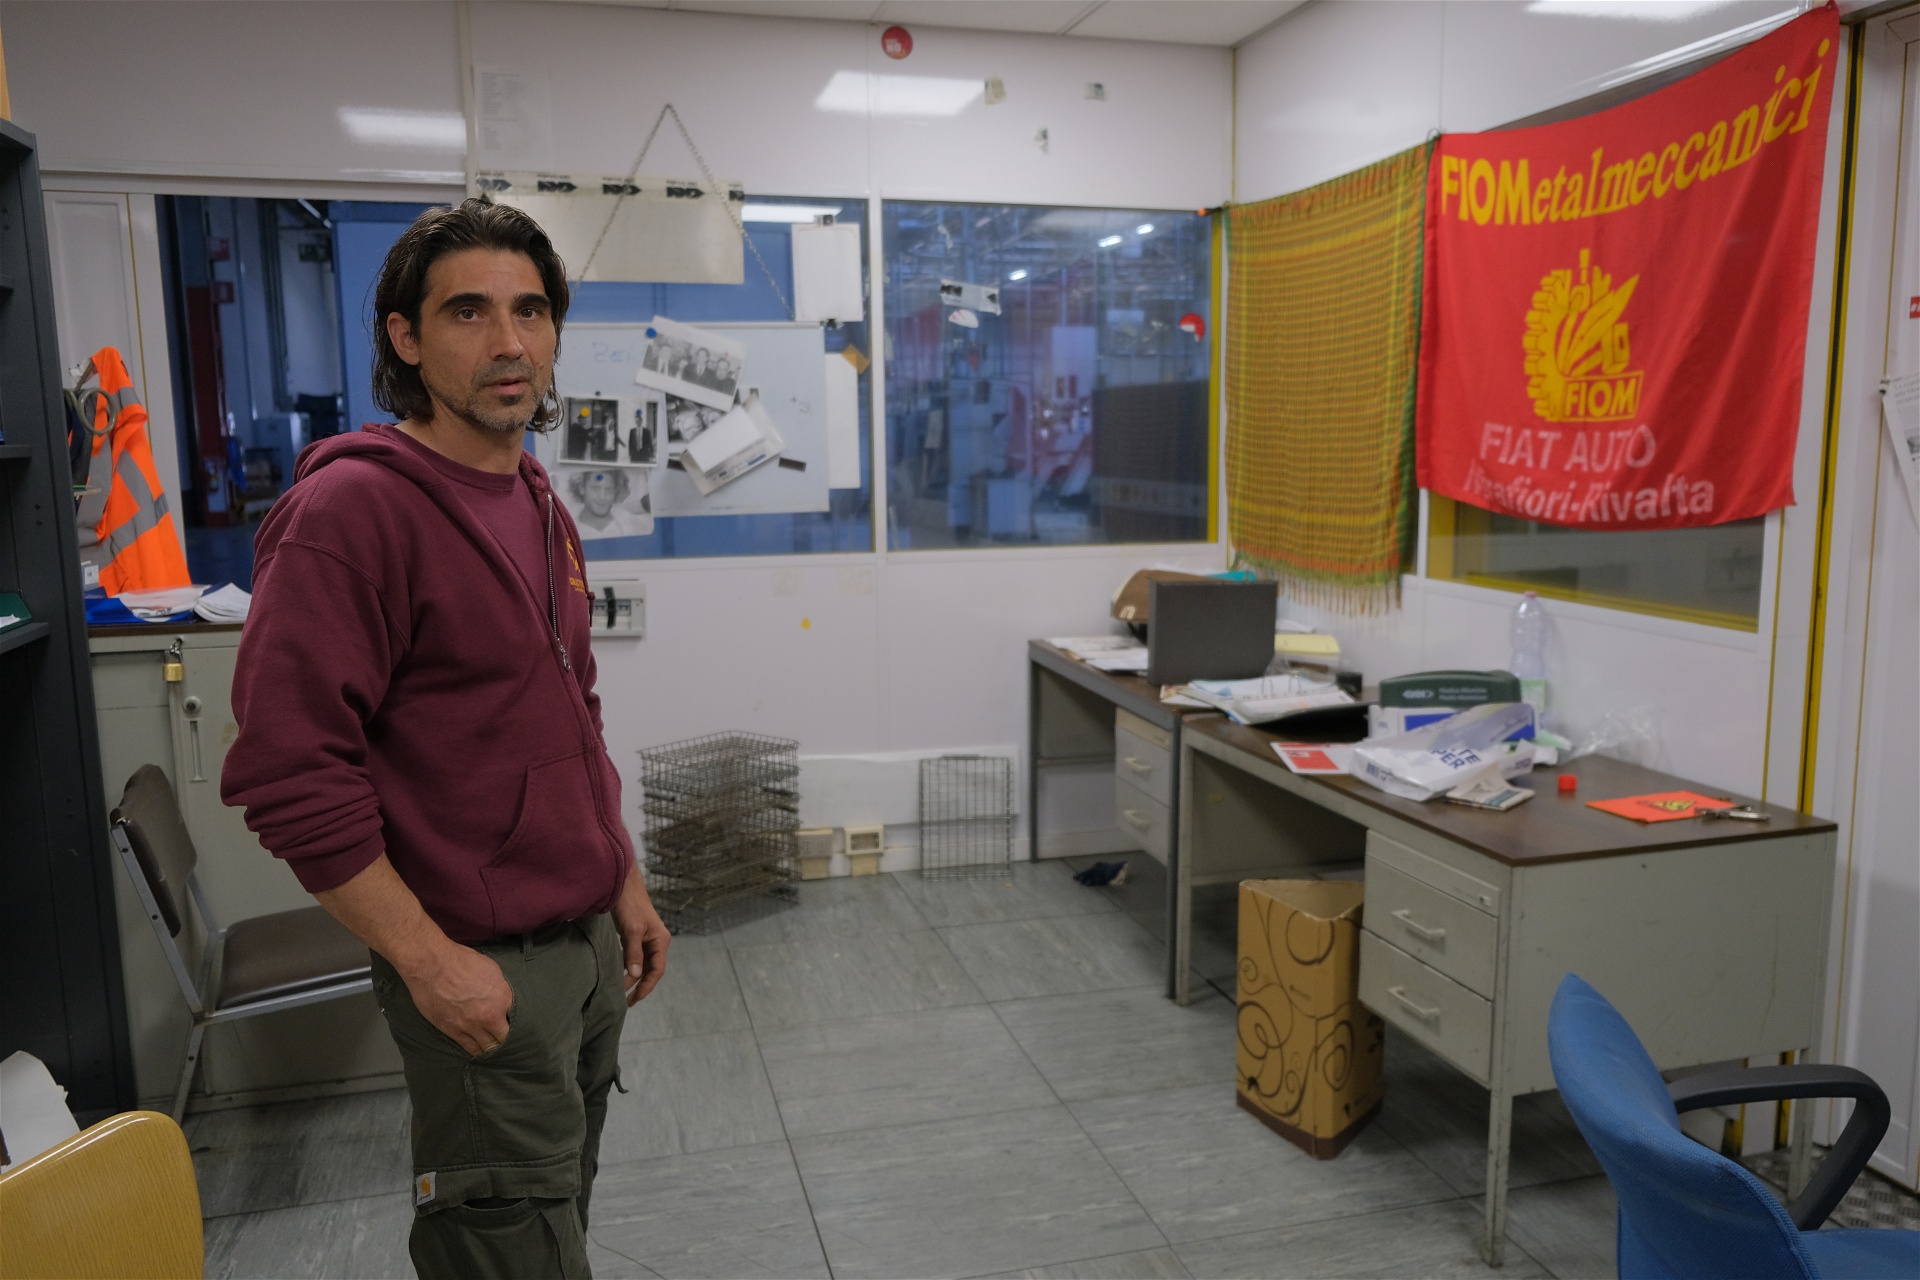 Roberto Spera i den gamla facklokalen, som ligger mitt i fabrikslokalen. Foto: Julia Lindblom